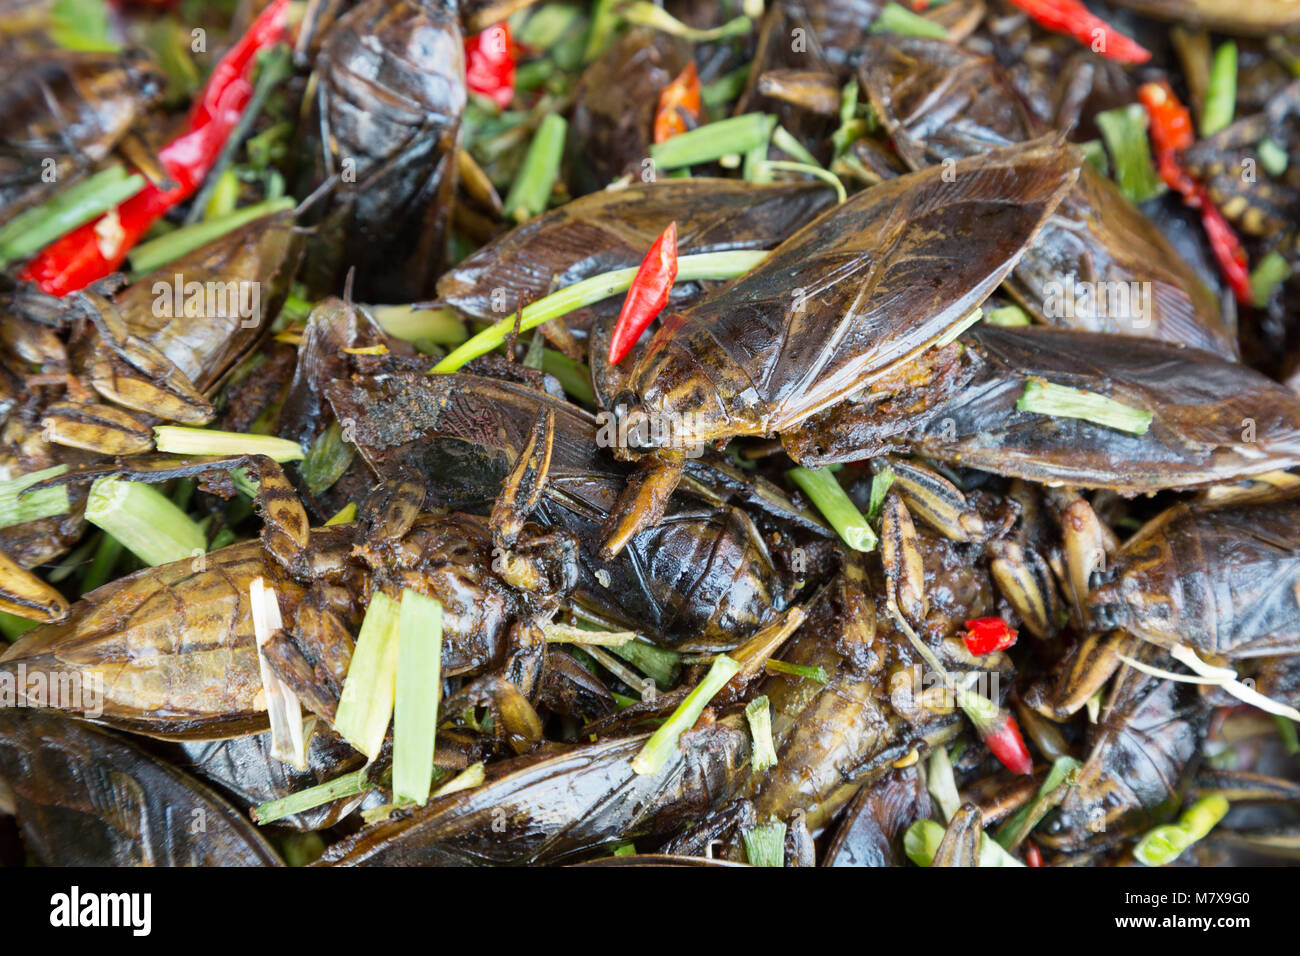 Mercato di insetto, Skuon, Cambogia - insetti fritti (cicale ) per i prodotti alimentari in vendita in una fase di stallo, Skuon, Cambogia Asia Foto Stock